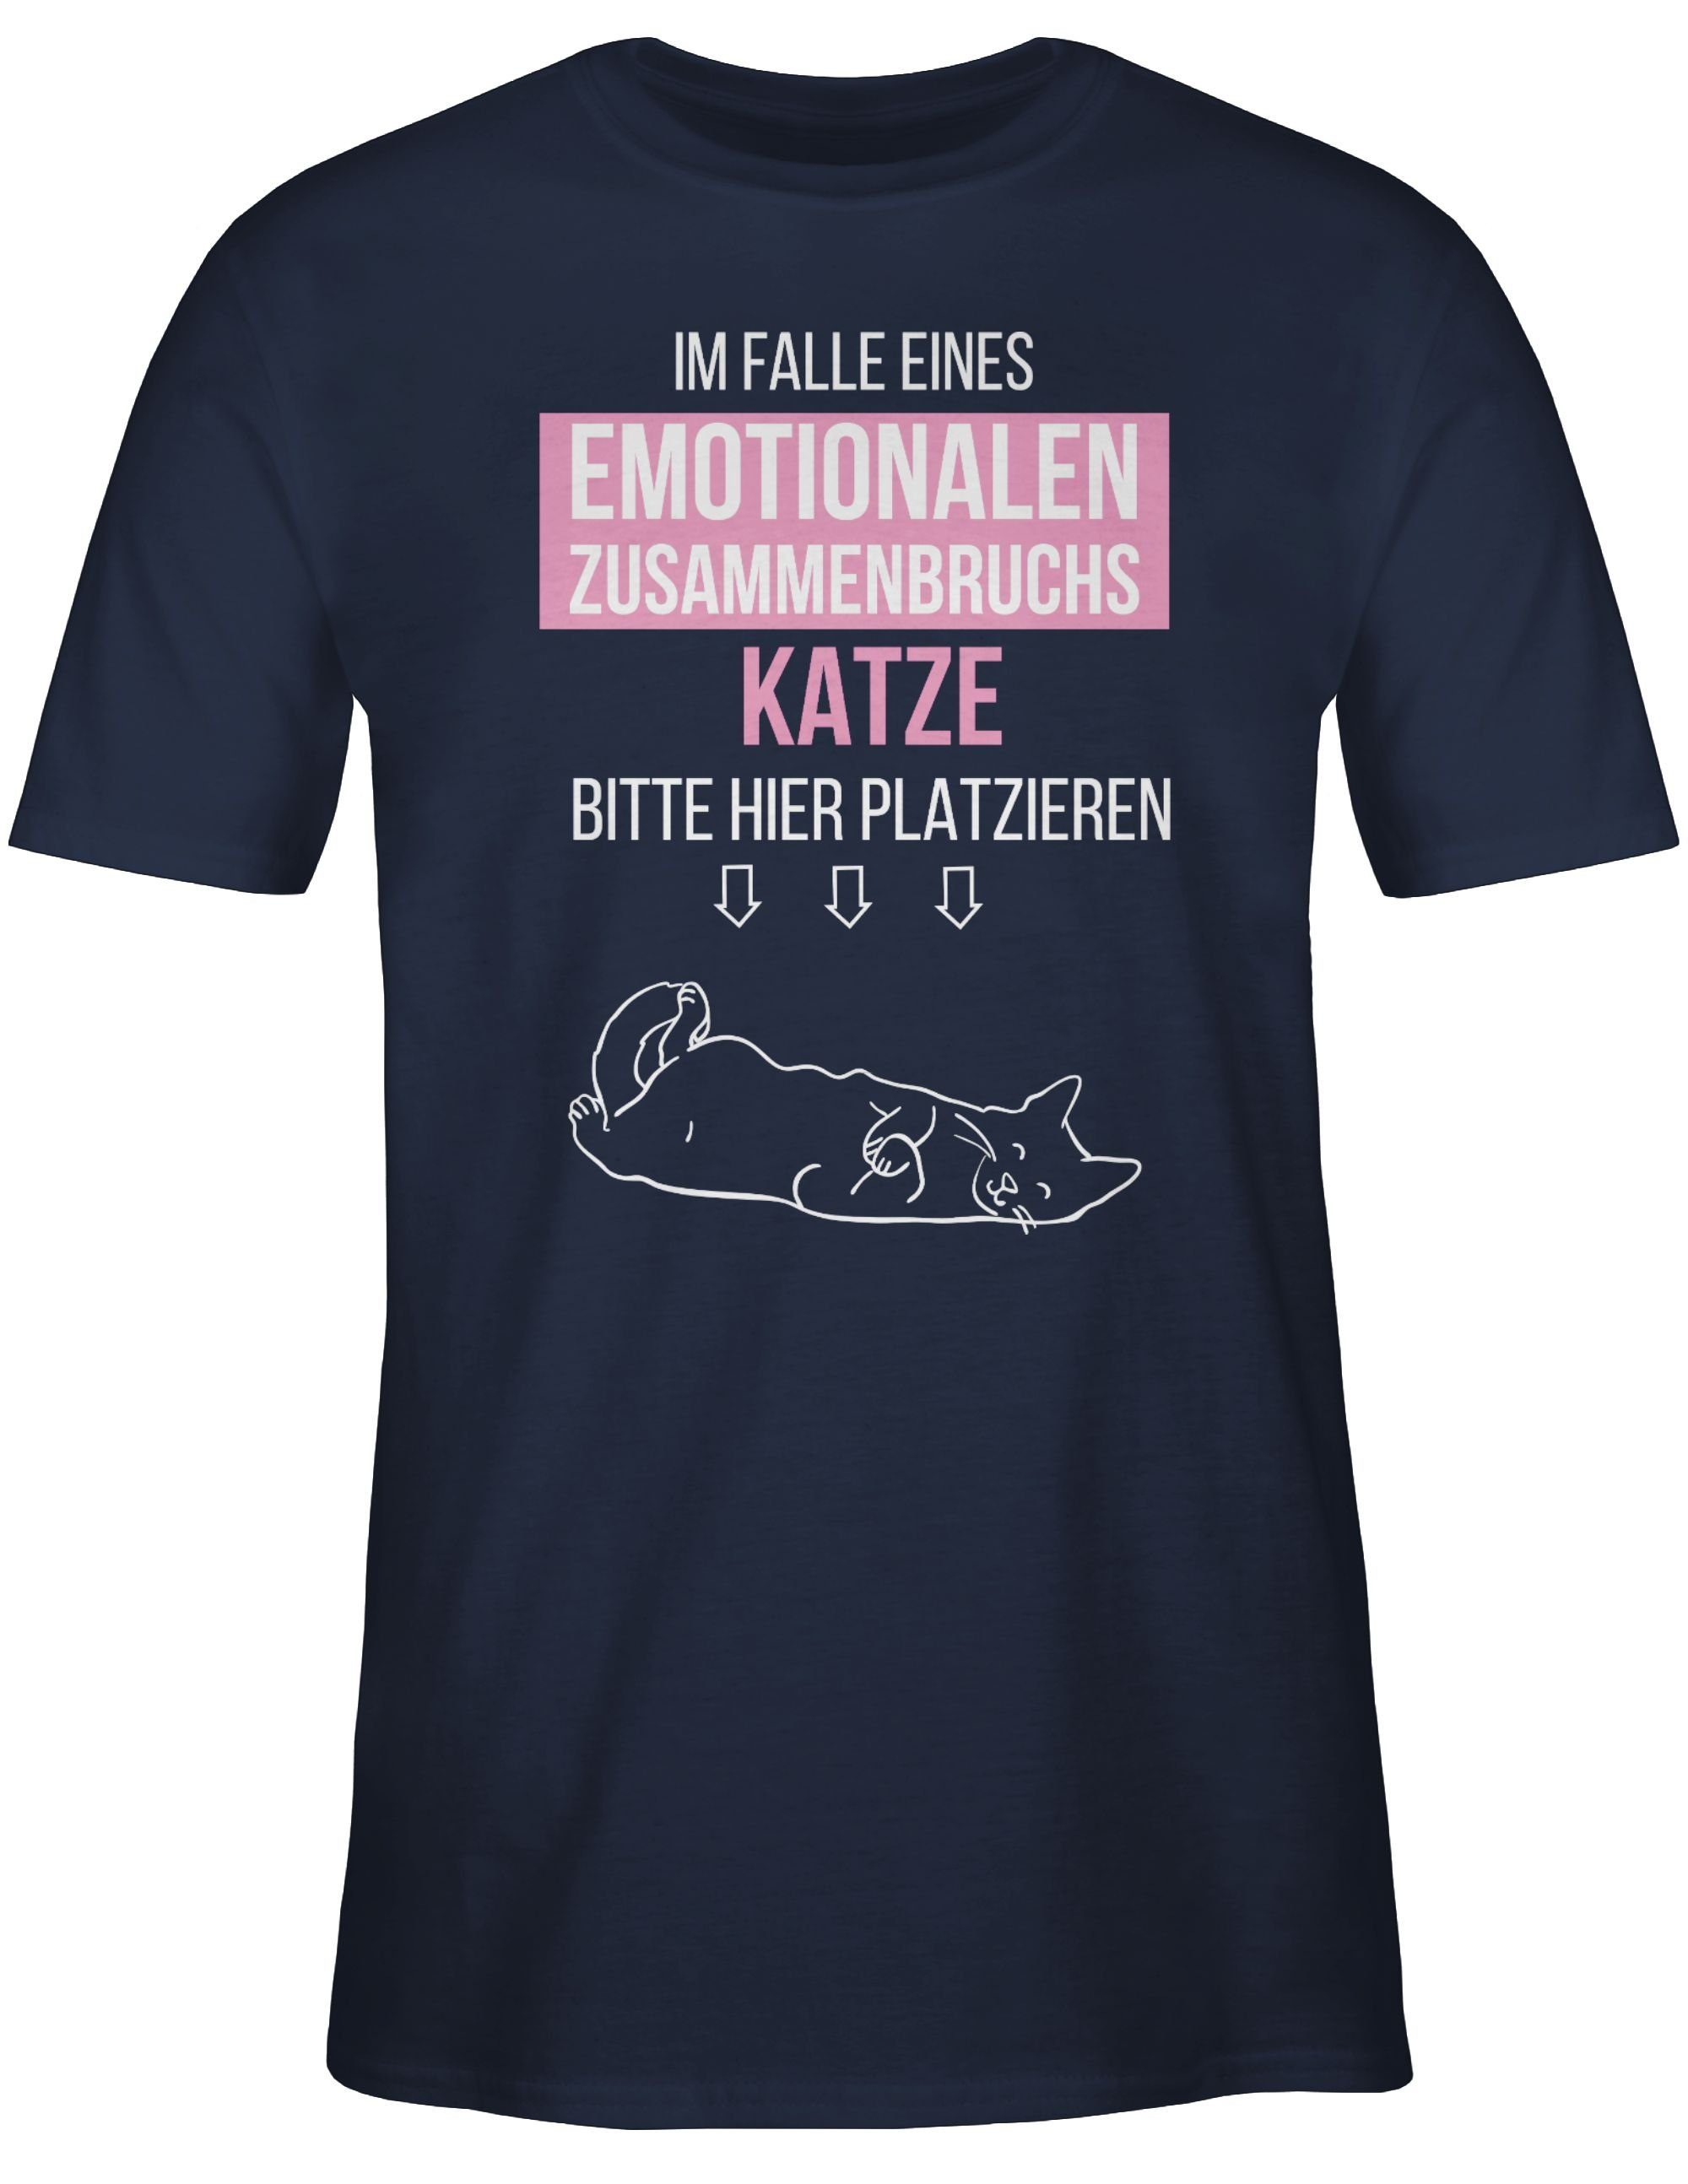 Shirtracer T-Shirt Im Falle eines emotionalen Zusammenbruchs Katze hier platzieren Sprüche Statement 3 Navy Blau